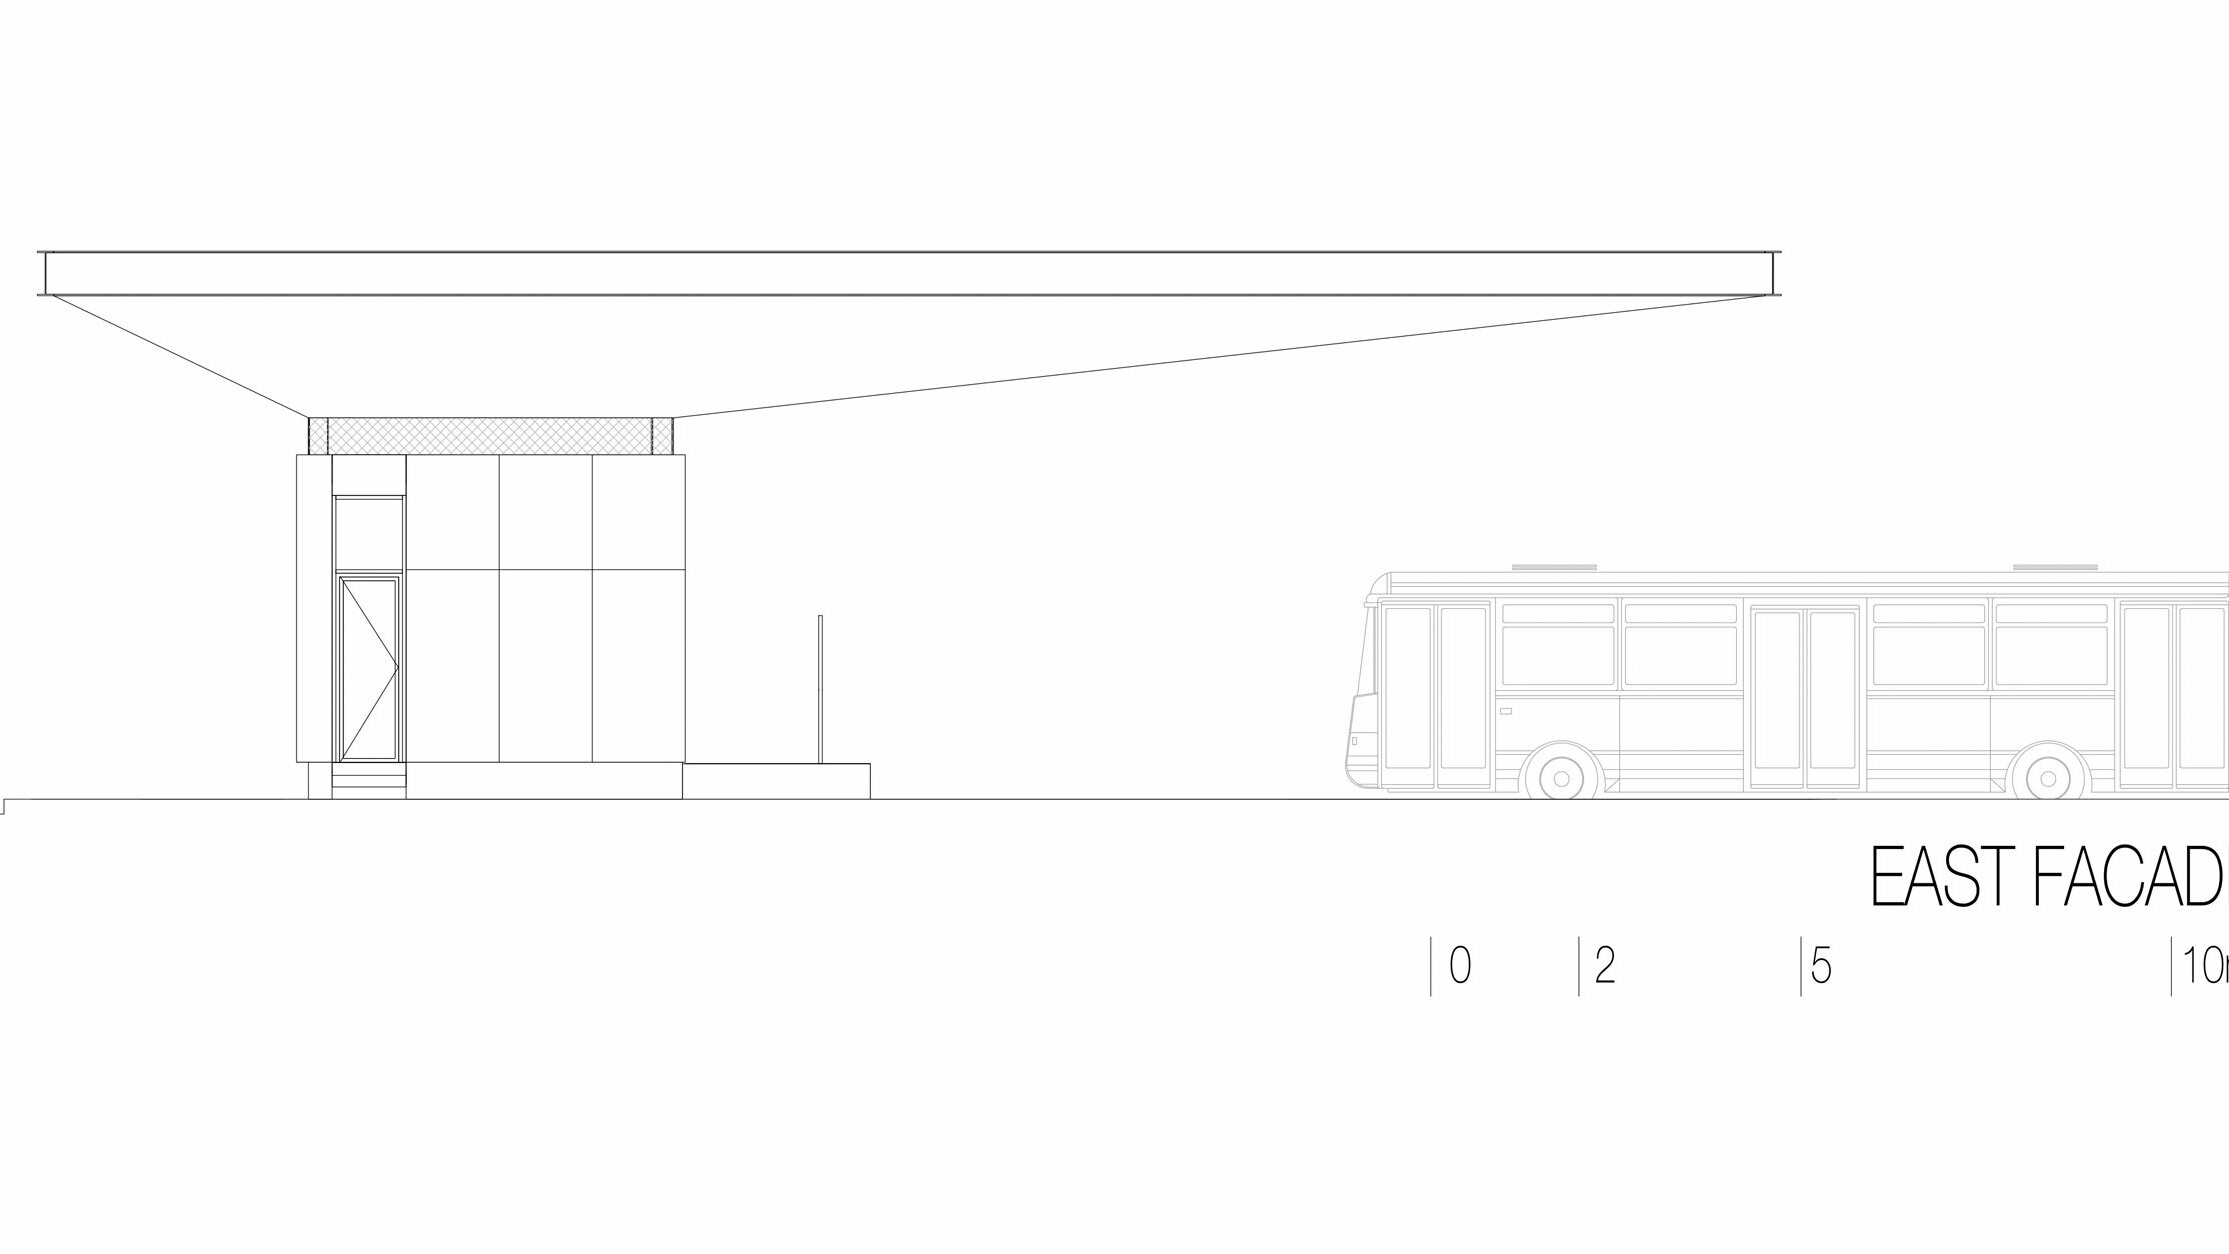 Na nacrtu se nalazi istočno pročelje autobusne postaje „Autobusni kolodvor Slavonski Brod“ u Hrvatskoj. Prikaz naglašava elegantnu horizontalnu strukturu bijelog Prefalz krova tvrtke PREFA koji se proteže cijelom duljinom zgrade. Ispod krova nalazi se pravokutna struktura čistih linija s velikim staklenim površinama. Na desnoj strani nacrta je vidljiv autobus, što daje predodžbu dimenzija postaje u odnosu na vozilo. Istočno pročelje naglašava modernu i funkcionalnu arhitekturu postaje, koja korištenjem stakla i aluminija stvara svjetlu i privlačnu atmosferu.